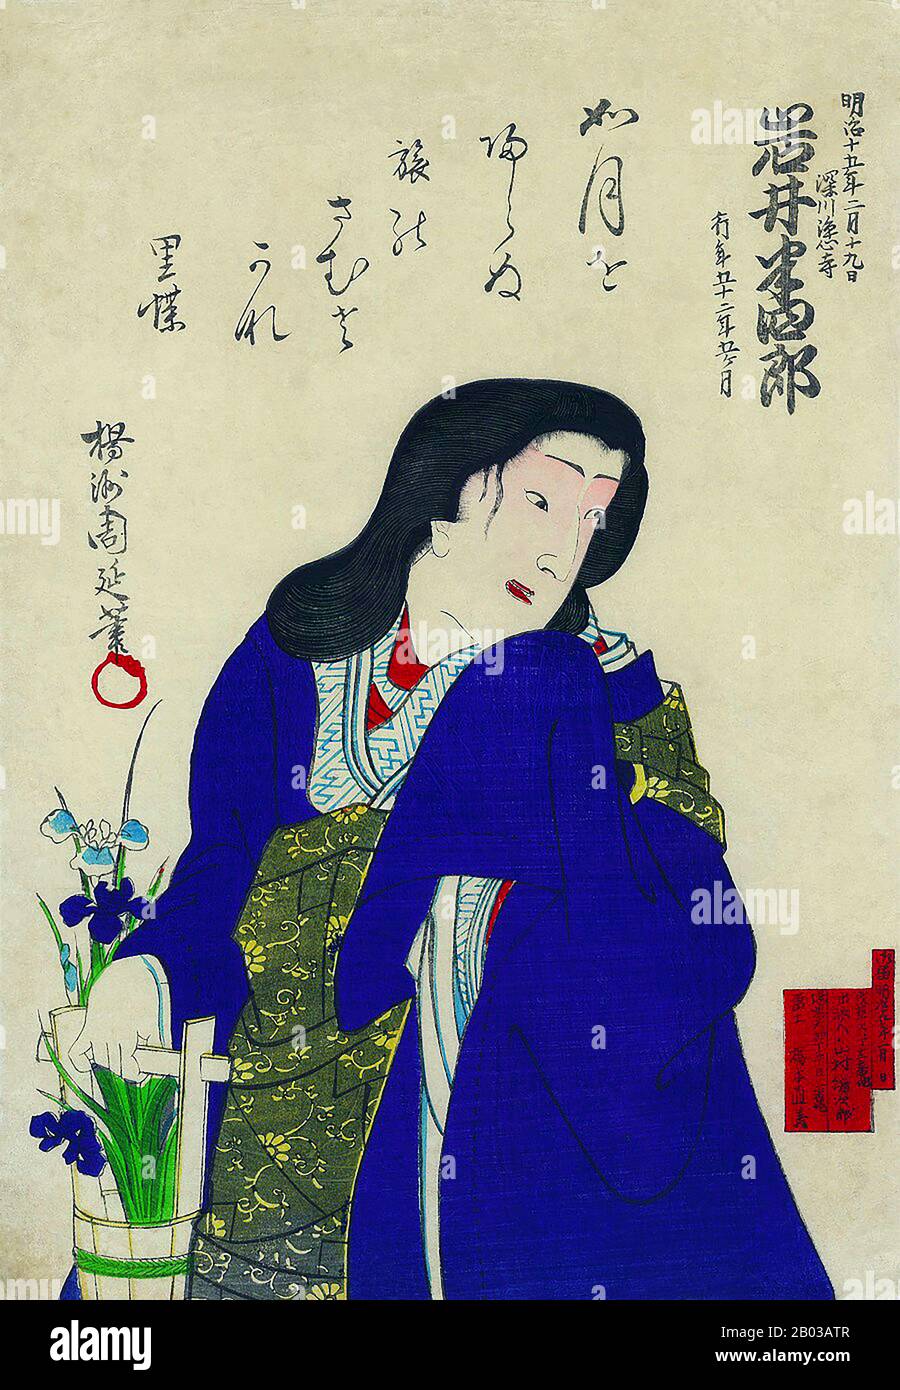 Iwai Hanshiro VIII était un artiste kabuki, l'un des plus grands du XIXe siècle. Il était connu principalement pour ses rôles féminins et pour sa place dans une longue lignée d'acteurs kabuki, qui ont tous pris le même nom de scène, transmis de père en fils. Iwai Hanshiro prend le nom de scène et le manteau de son père en 1872. Banque D'Images